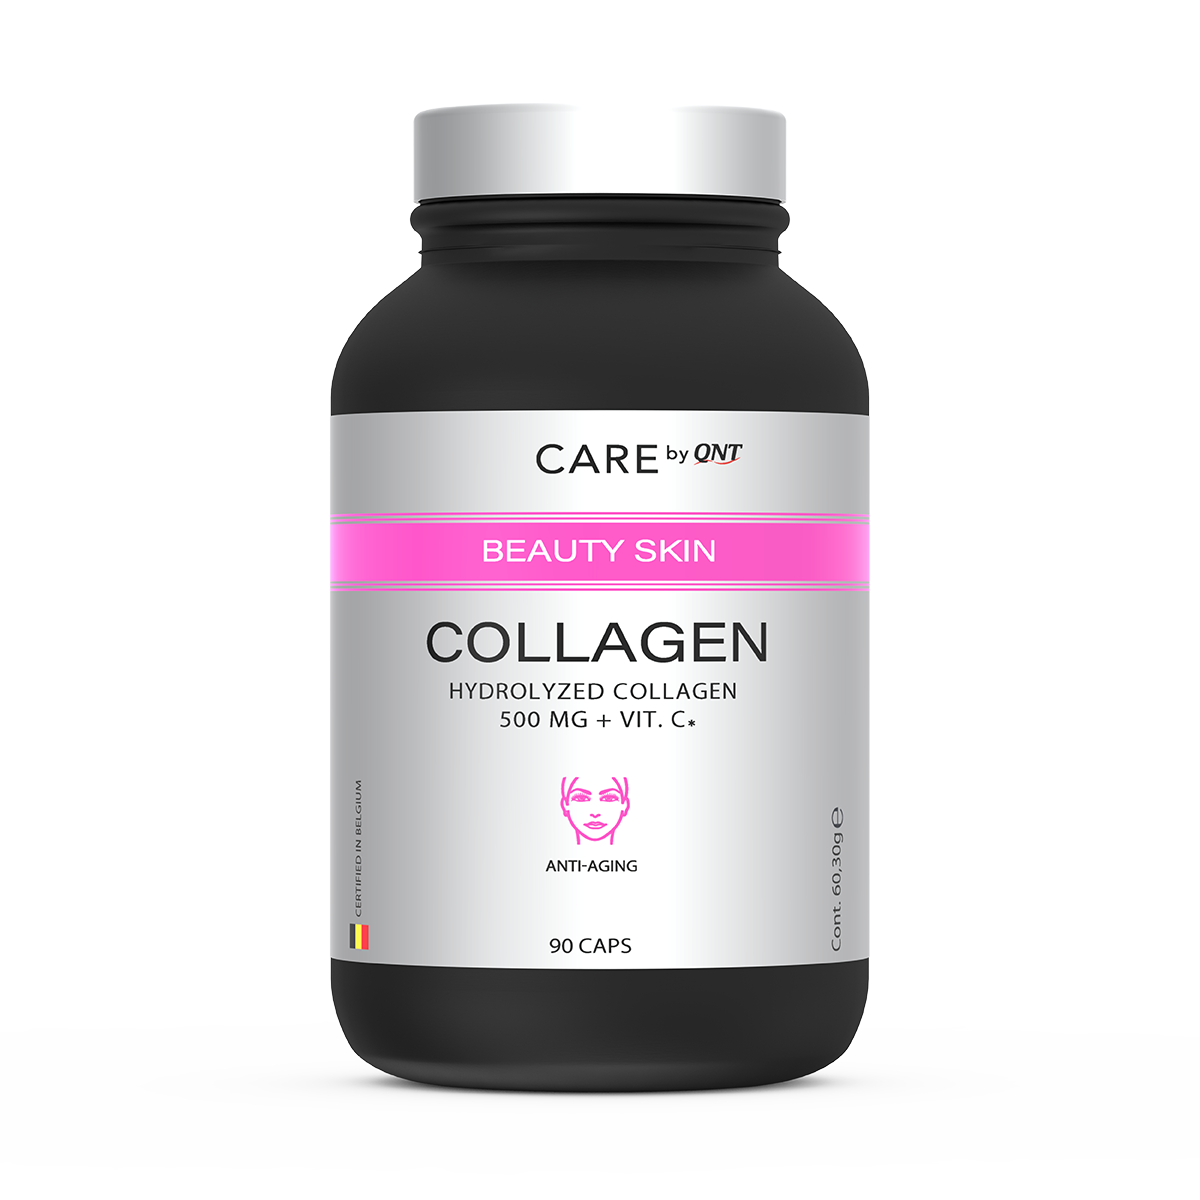 Colagen - COLLAGEN 90 Caps, advancednutrition.ro